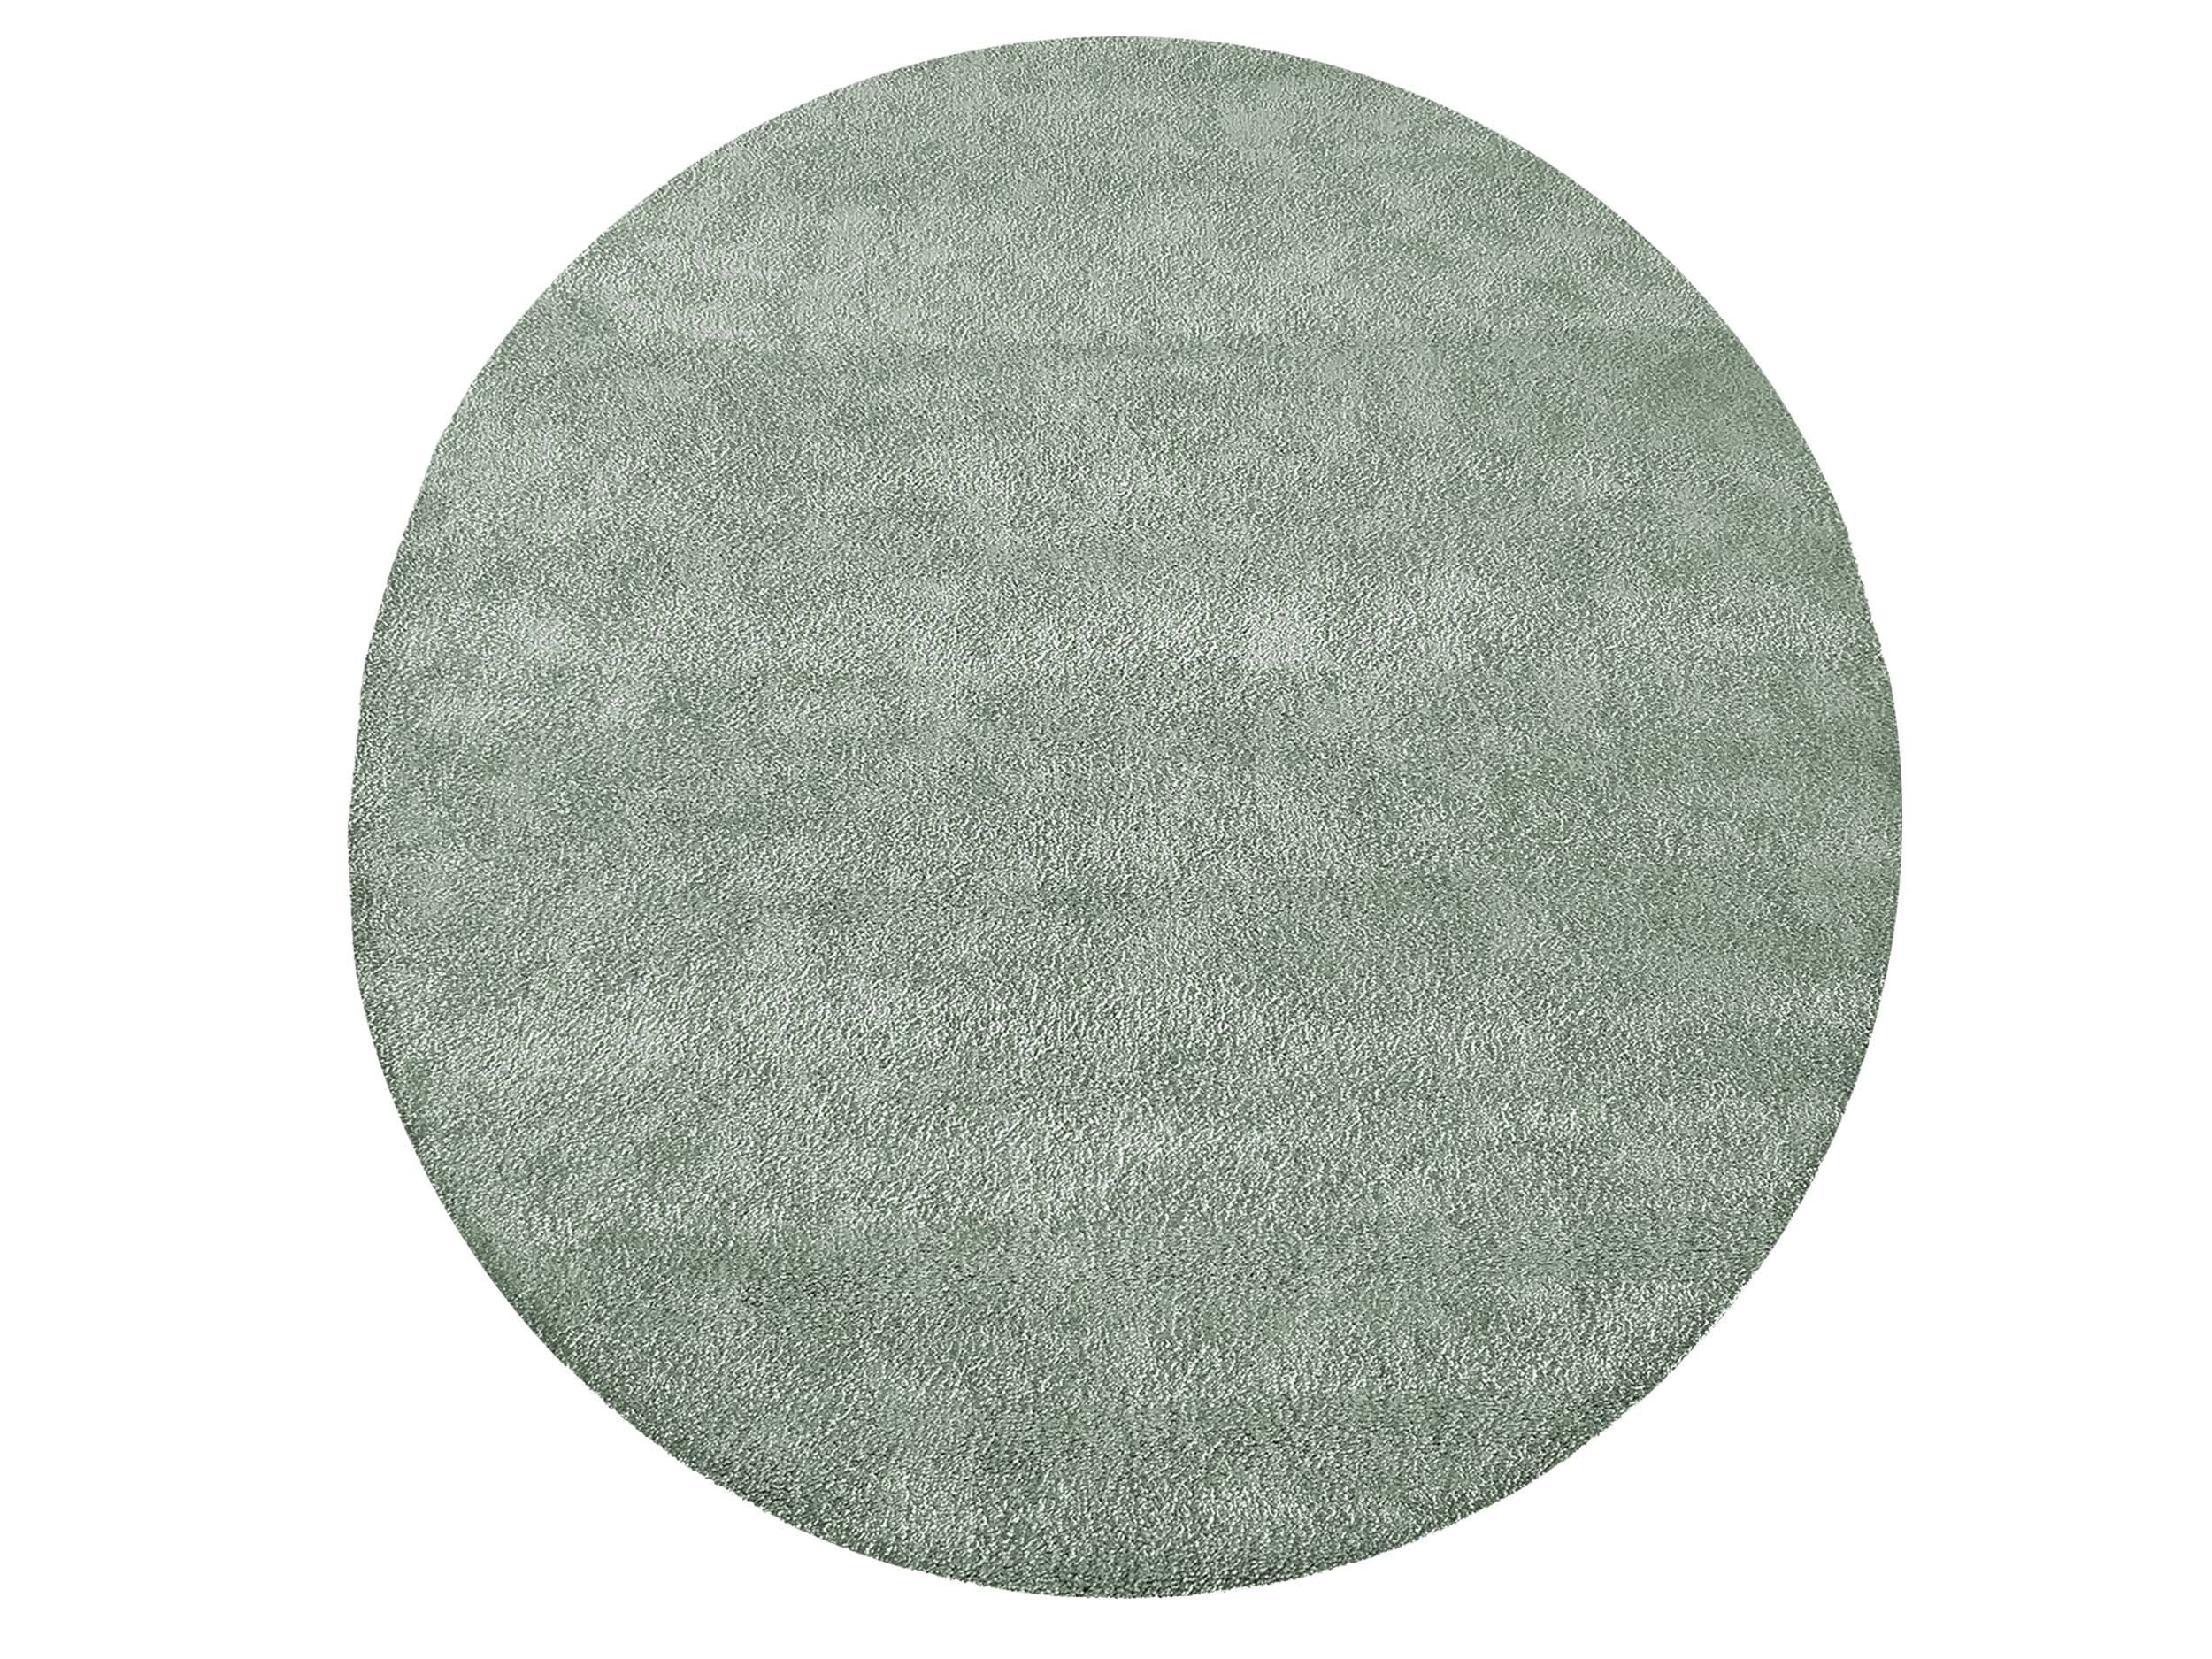 Moderní ródnyy koberec v mentolovej barvě